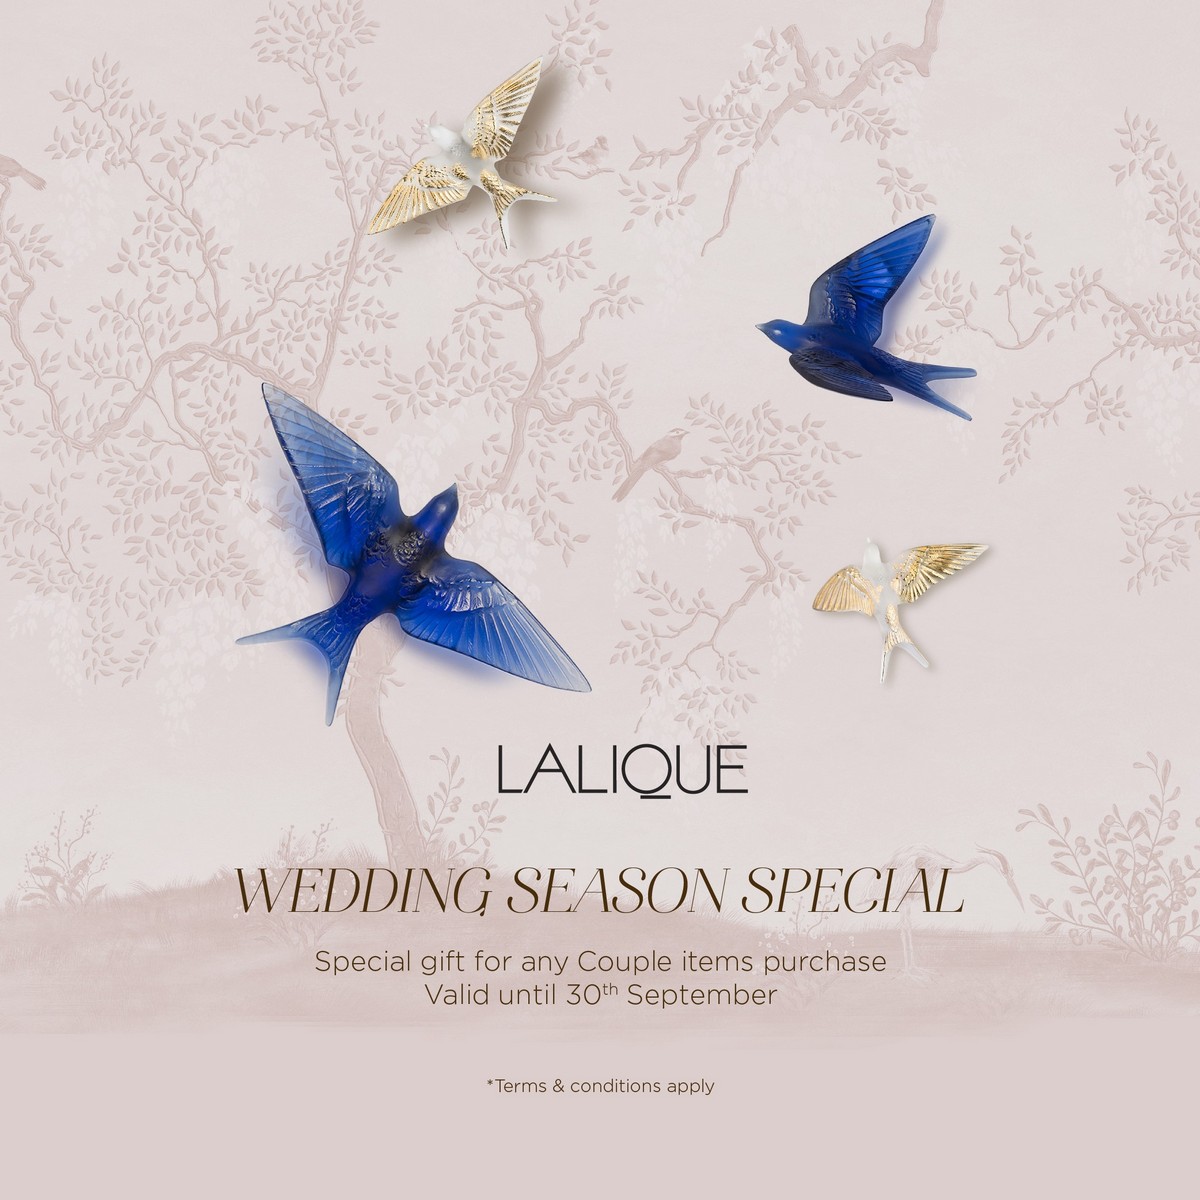 Quà tặng lãng mạn mùa cưới từ Lalique 1